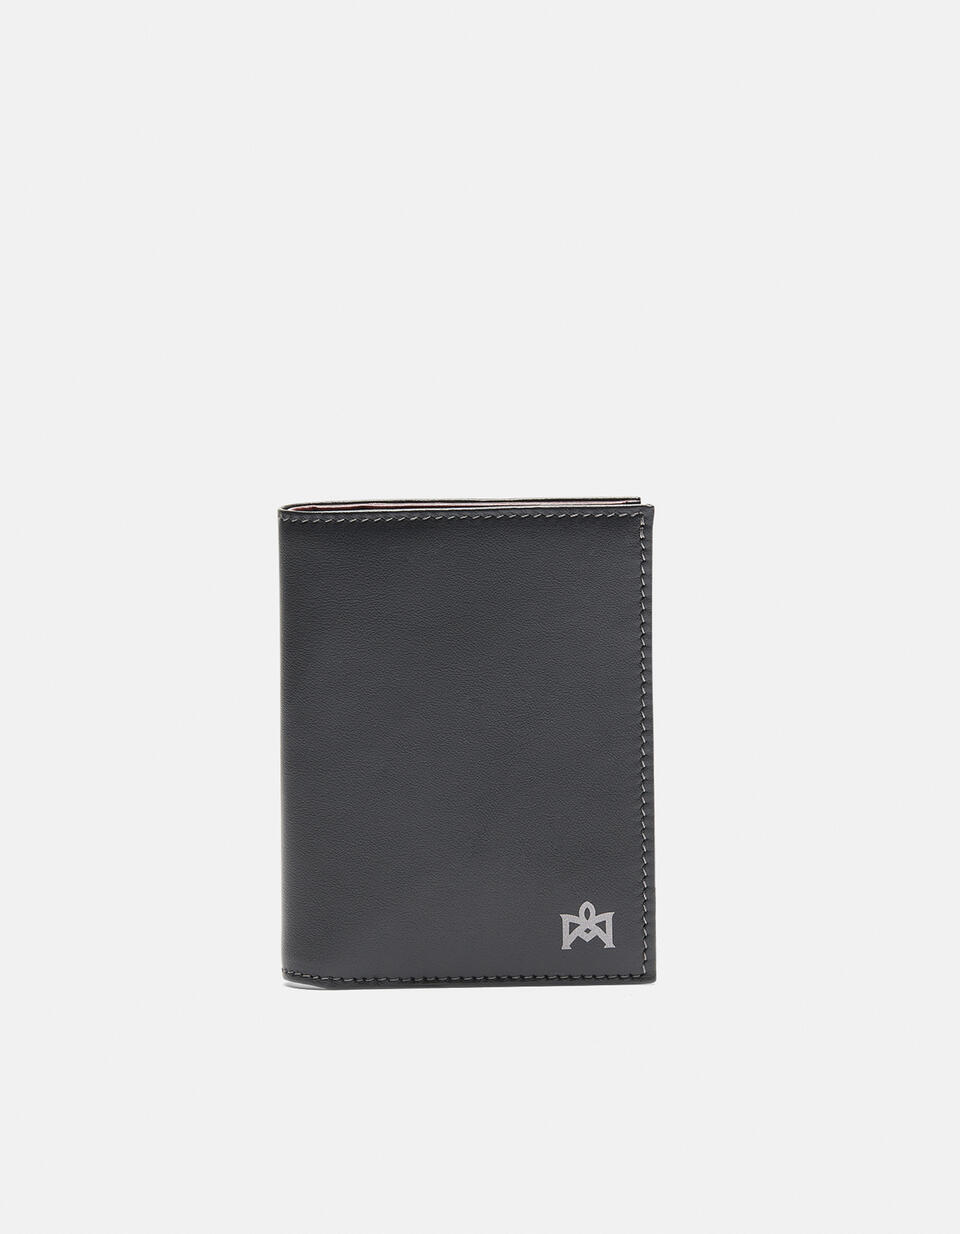 Vertical wallet Blackbordeaux  - Women's Wallets - Men's Wallets - Wallets - Cuoieria Fiorentina